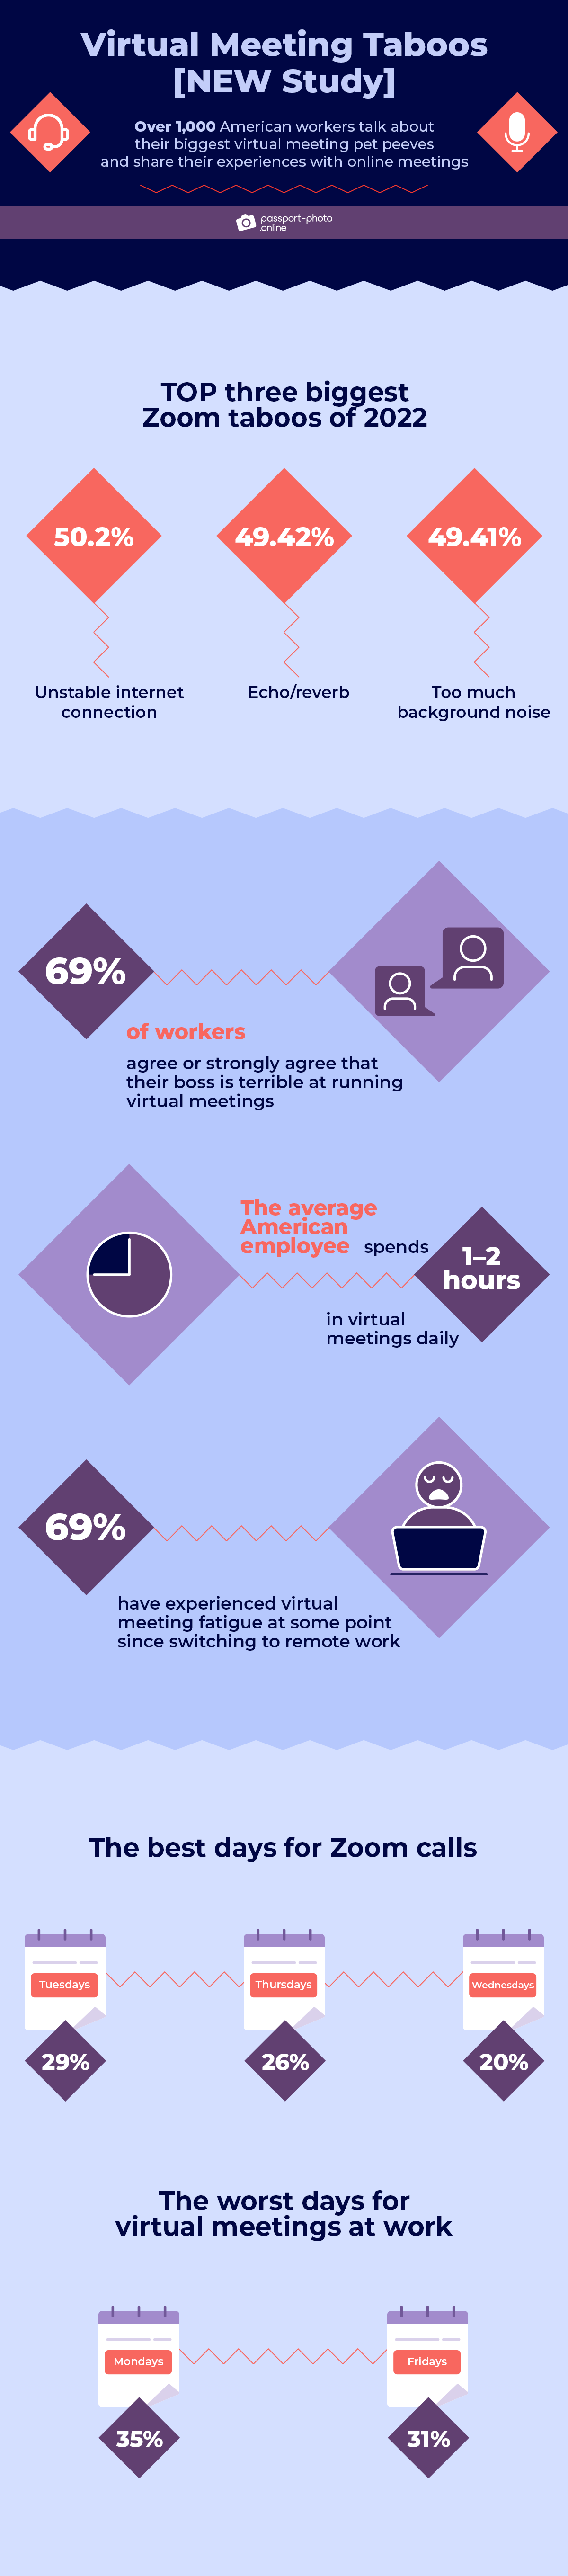 virtual meeting taboos: study’s key findings